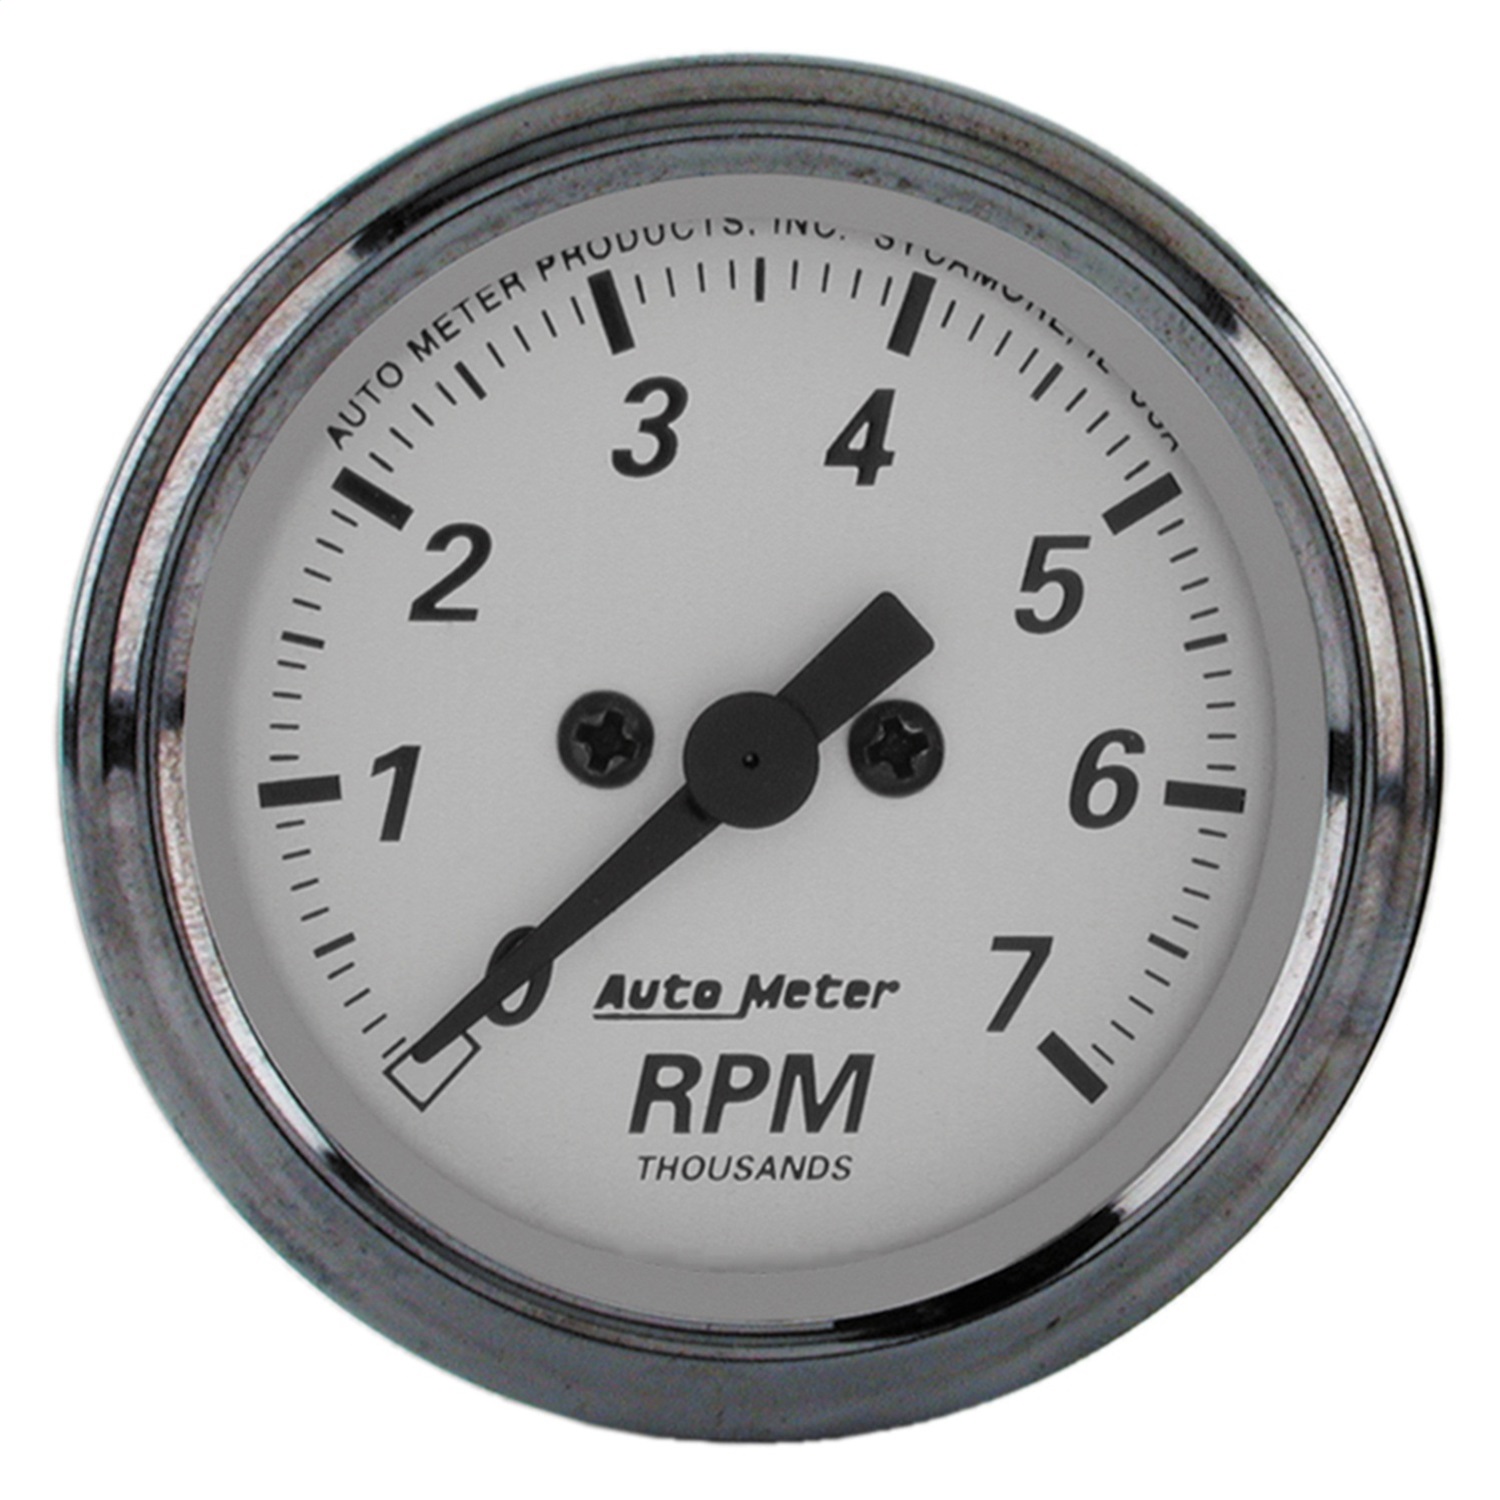 Auto Meter Auto Meter 1994 American Platinum; Electric Tachometer